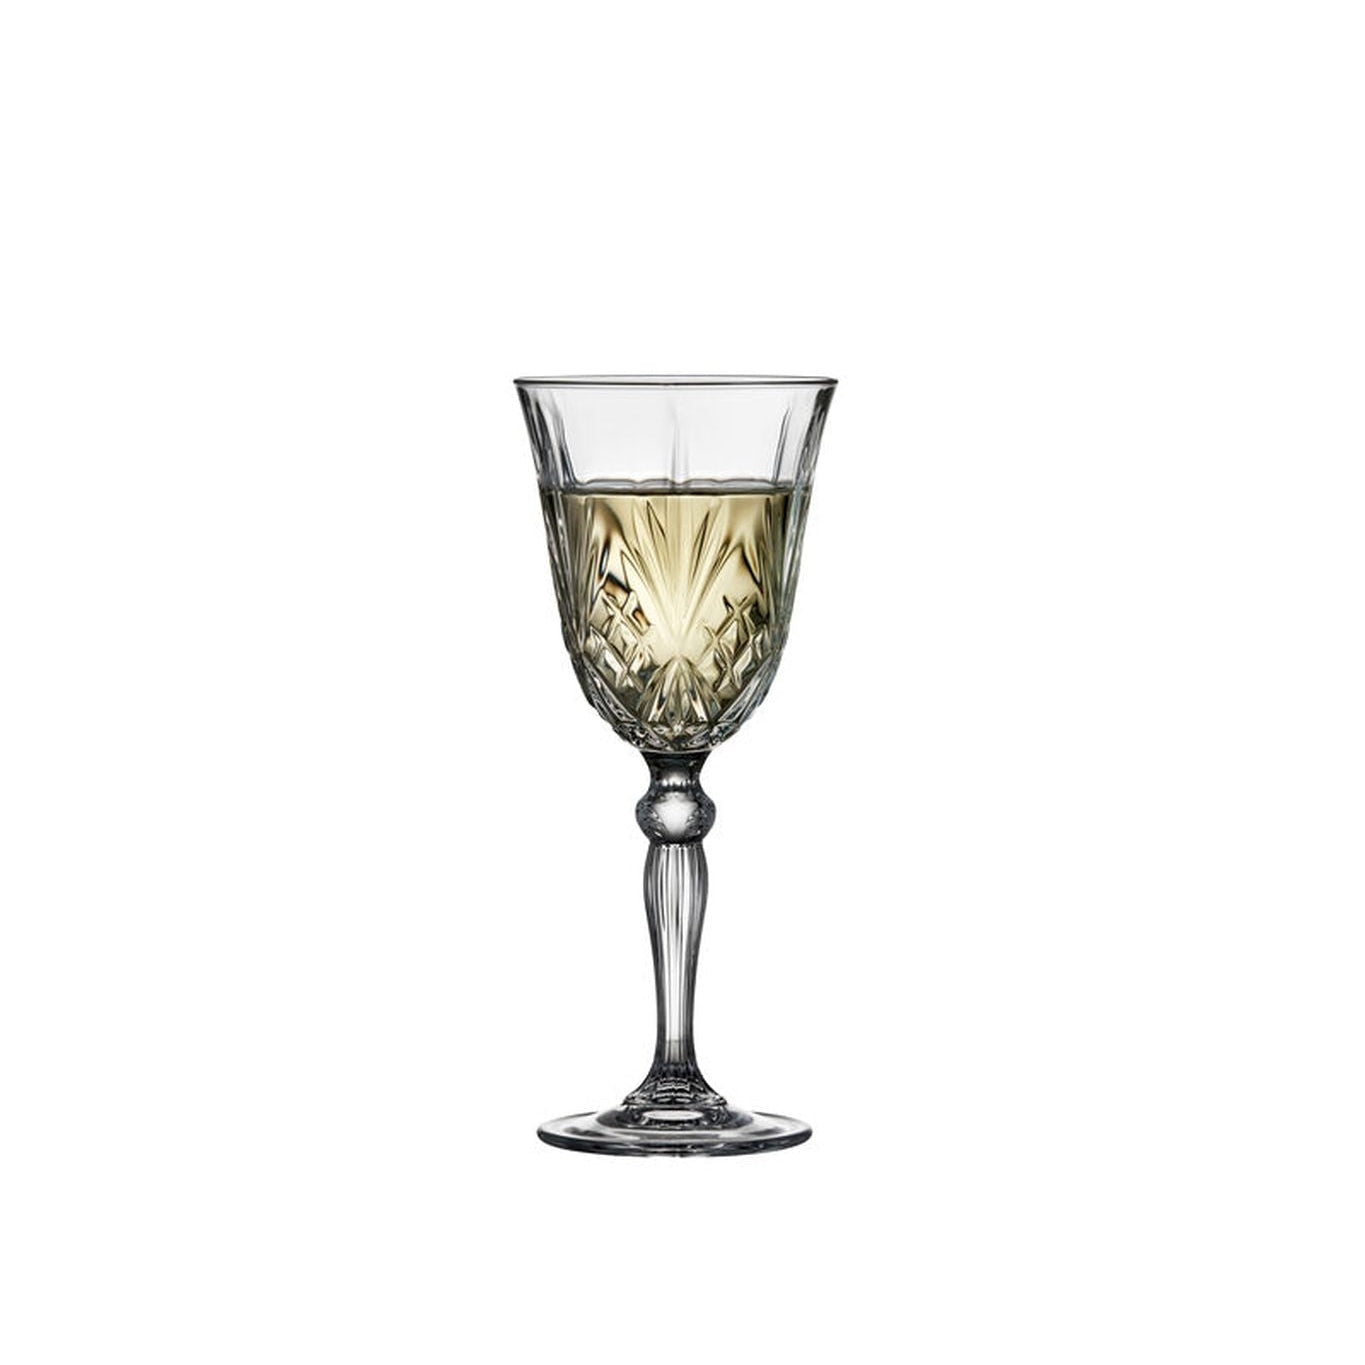 Lyngby Glas Melodia Krystal White Wine Glass 21 Cl, 4 Pcs.